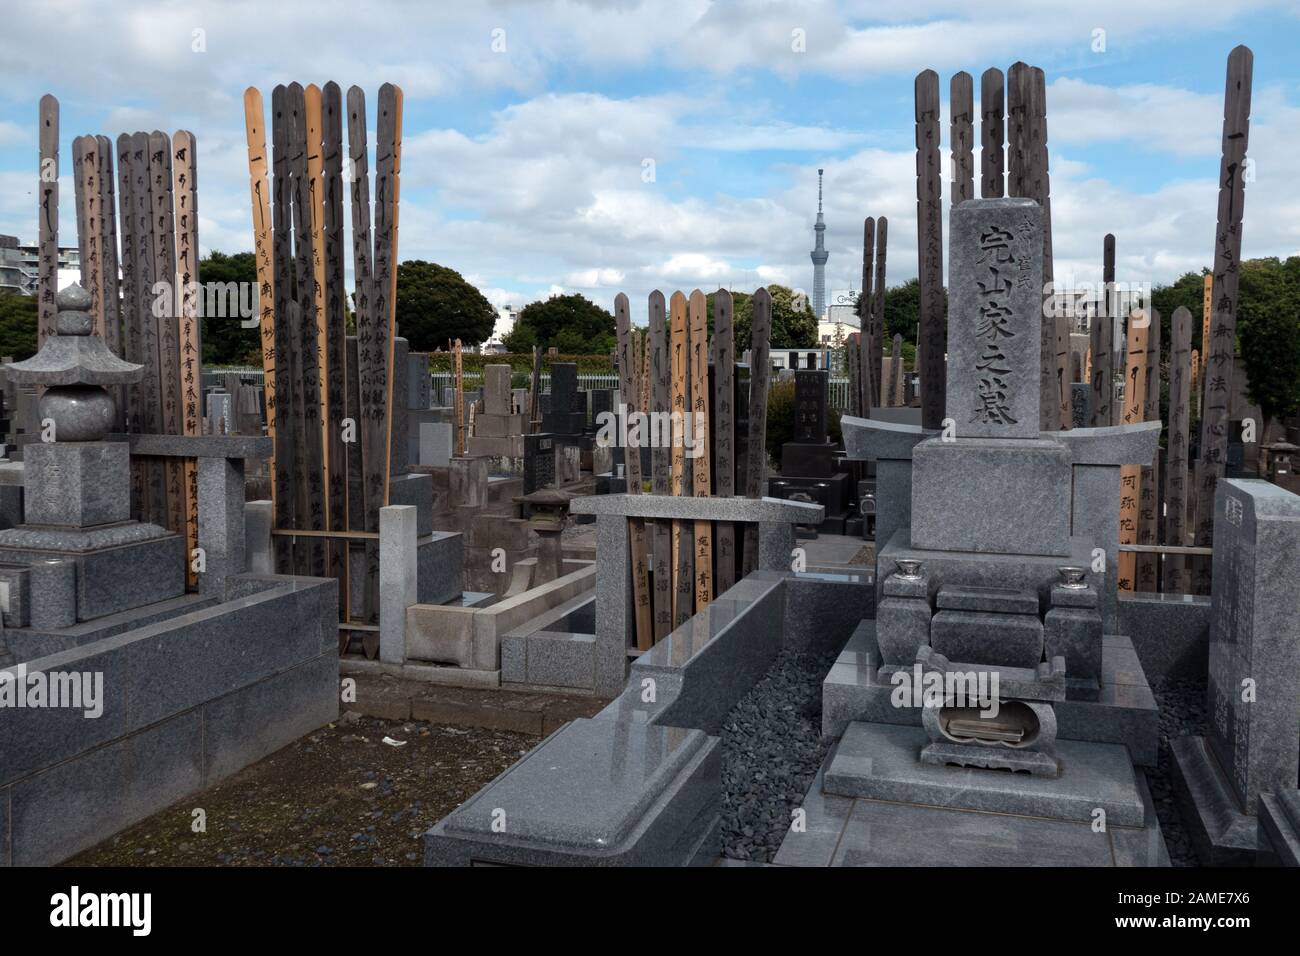 Cimitero di Yanaka a Tokyo, Giappone, Asia. Vecchio cimitero giapponese con tombe e tombe. Skytree Tower sullo sfondo Foto Stock